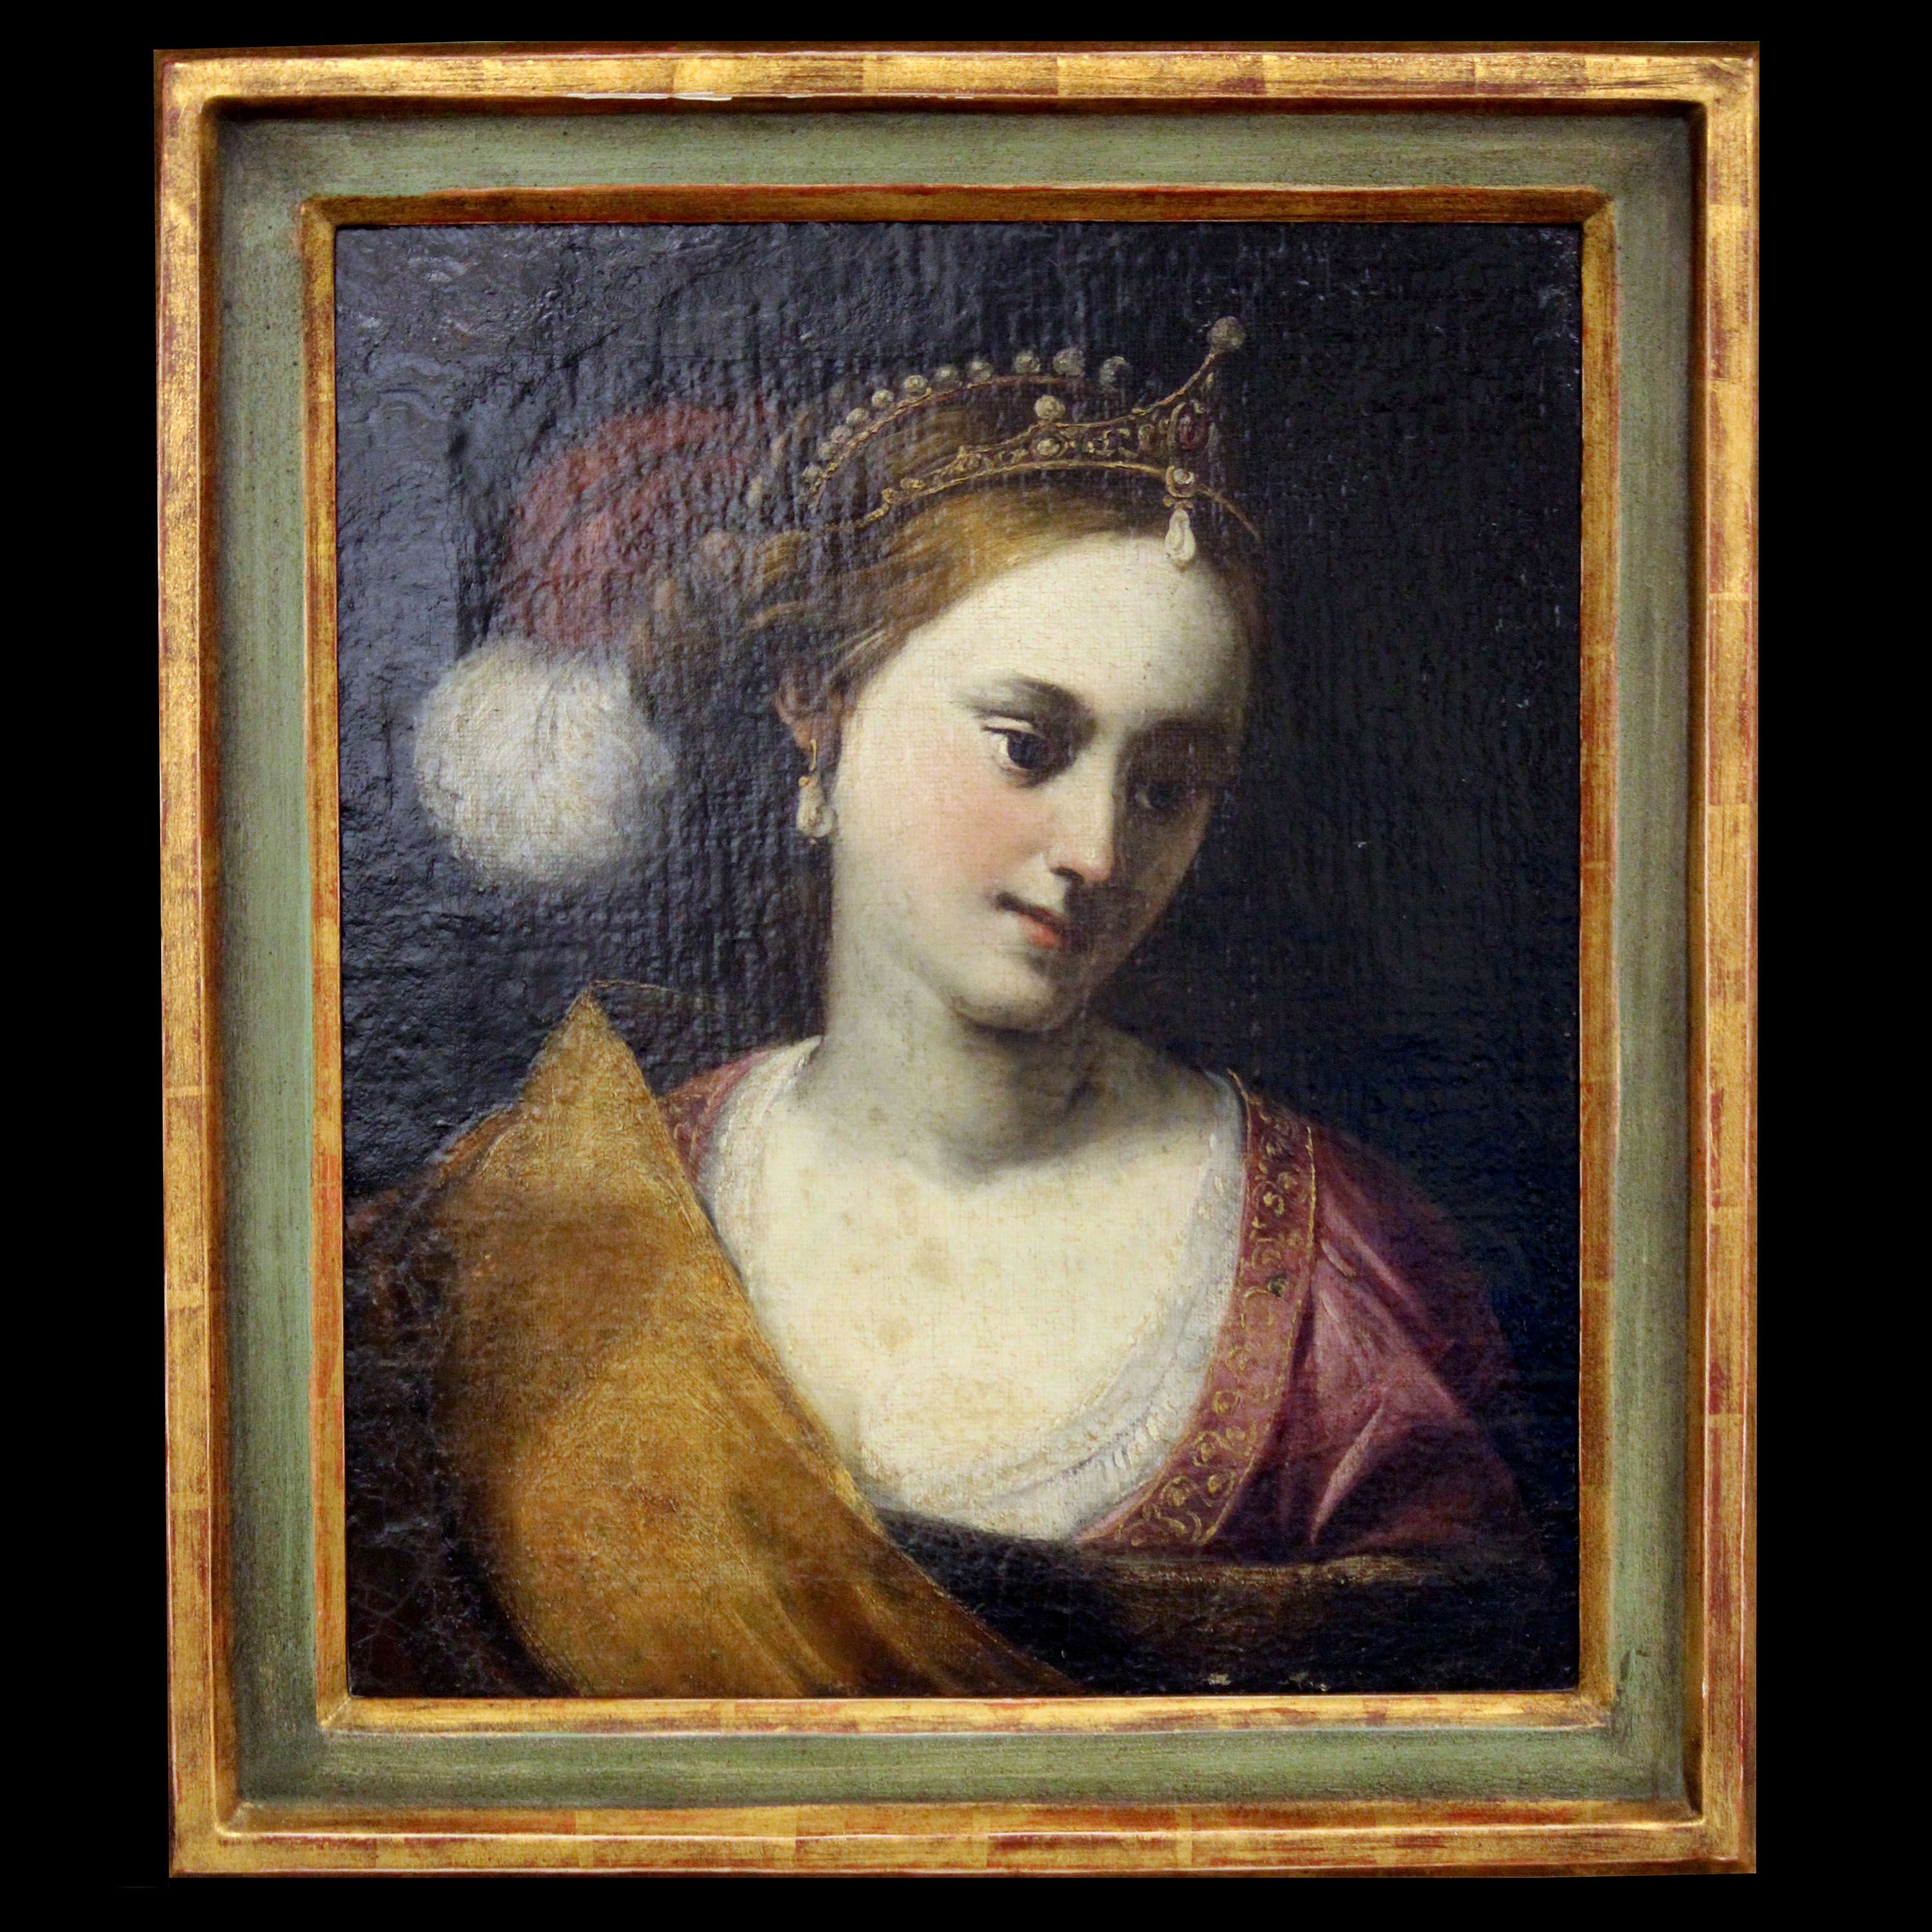 Oljemålning, Oidentifierad konstnär, 1600/1700-tal, porträtt, olja på duk, 56x48 cm